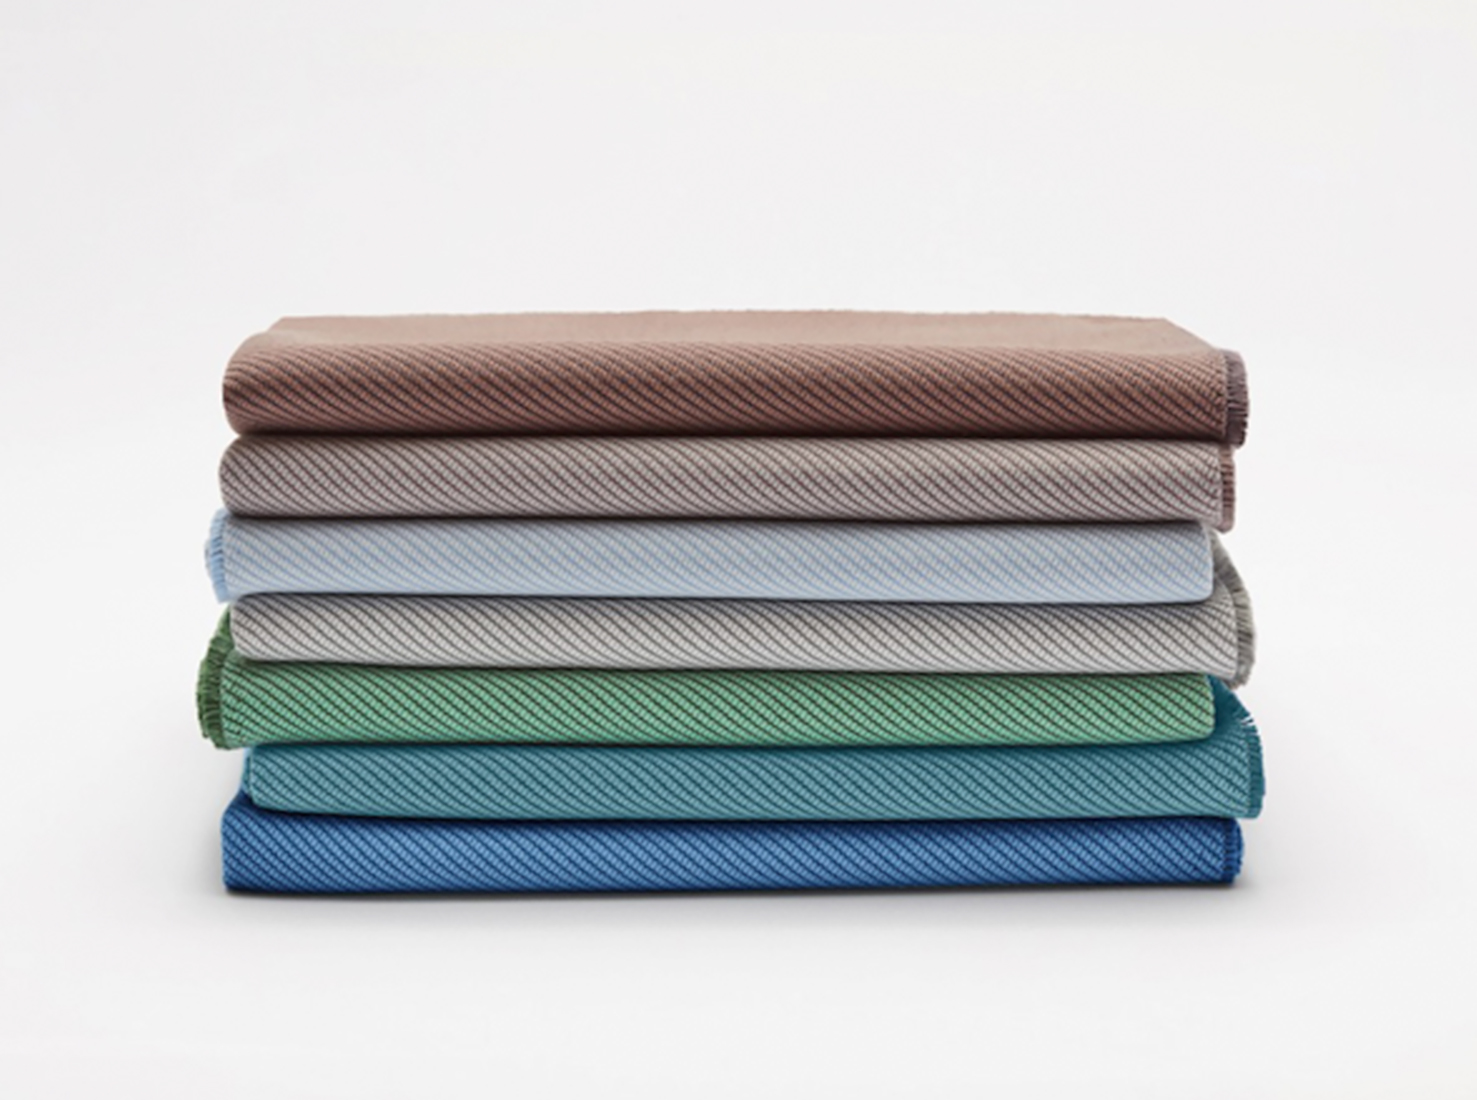 Текстиль Oceanic из переработанного пластика, Camira Fabrics. 